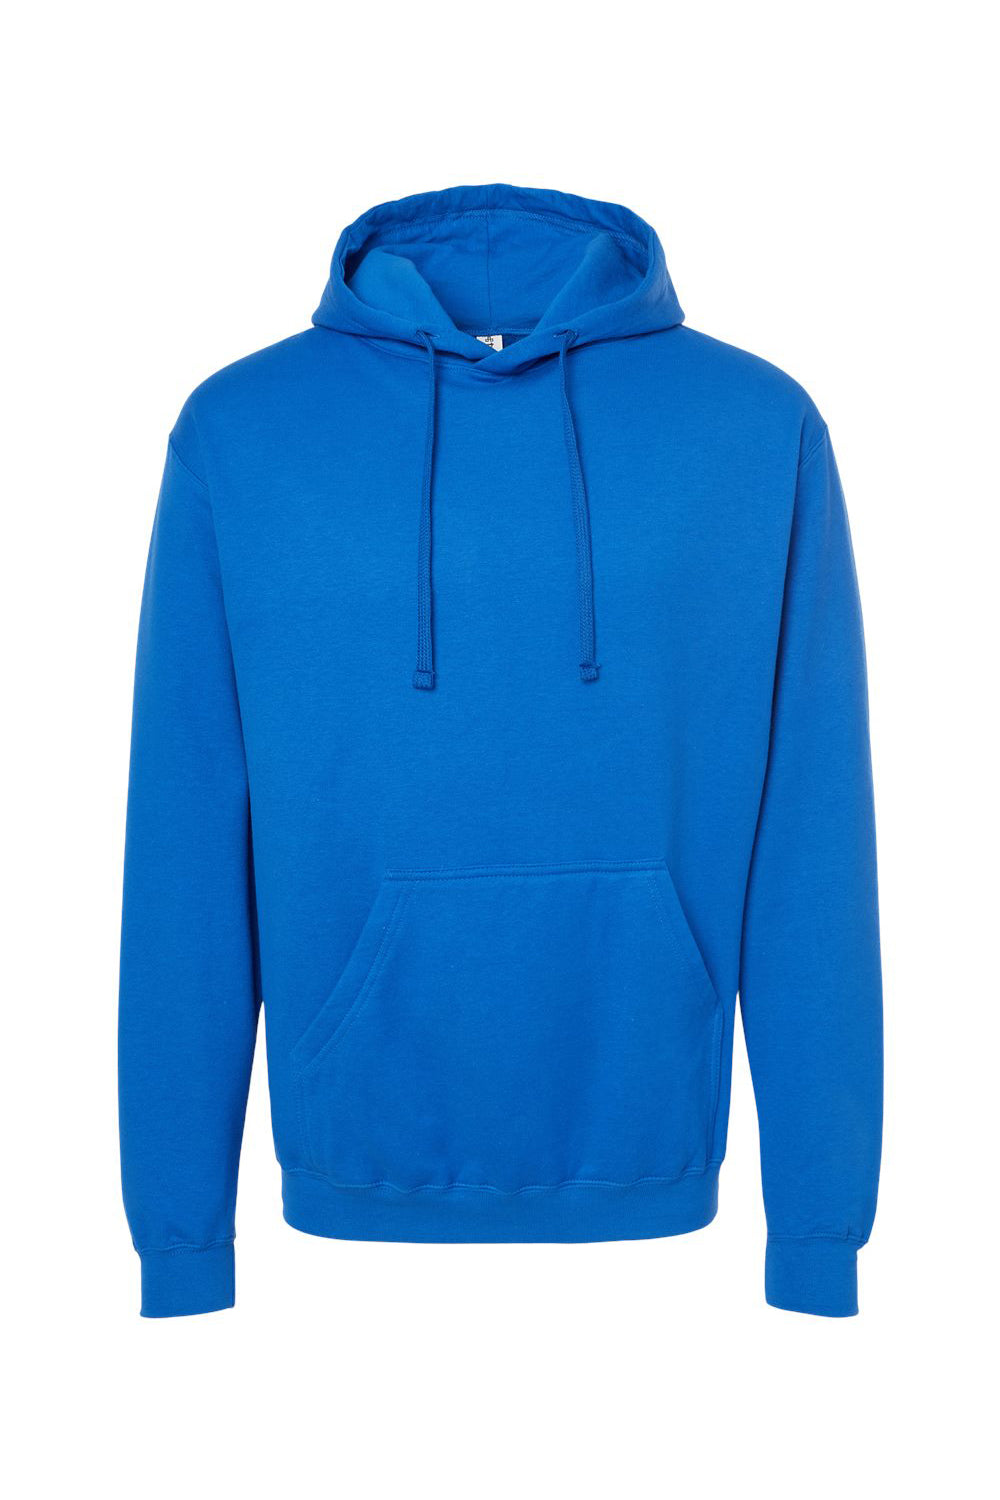 Tultex 320 Mens Fleece Hooded Sweatshirt Hoodie Royal Blue Flat Front